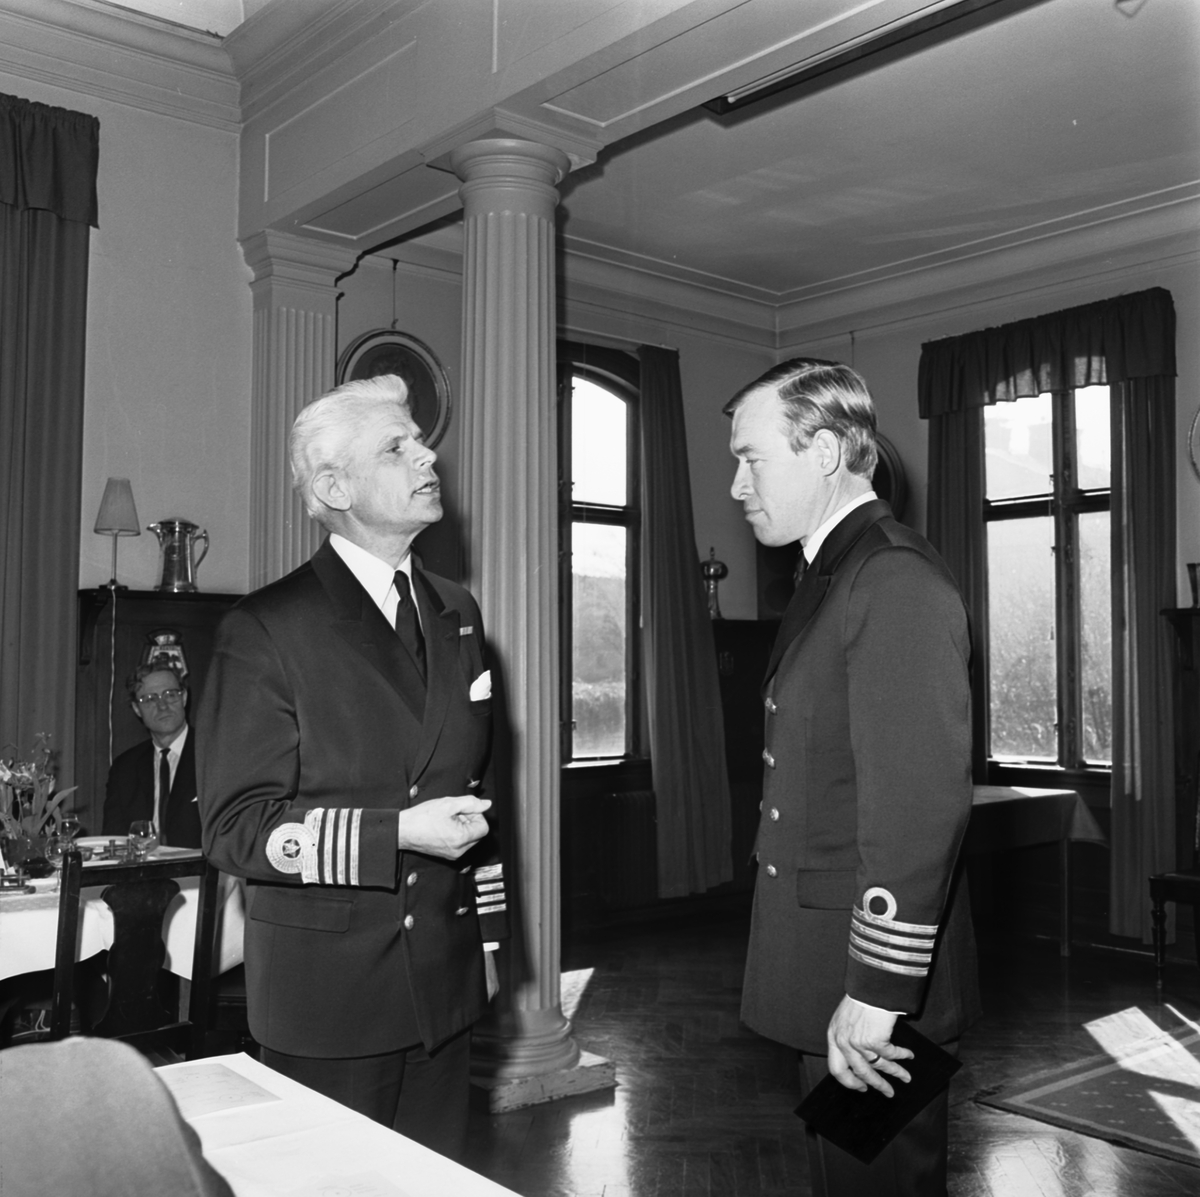 Bilden visar två svenska sjömilitärer i samtal. Stående till vänster är kommendör av 1. graden Harry Engblom, detta året avgående chef för Västkustens örlogsbas.